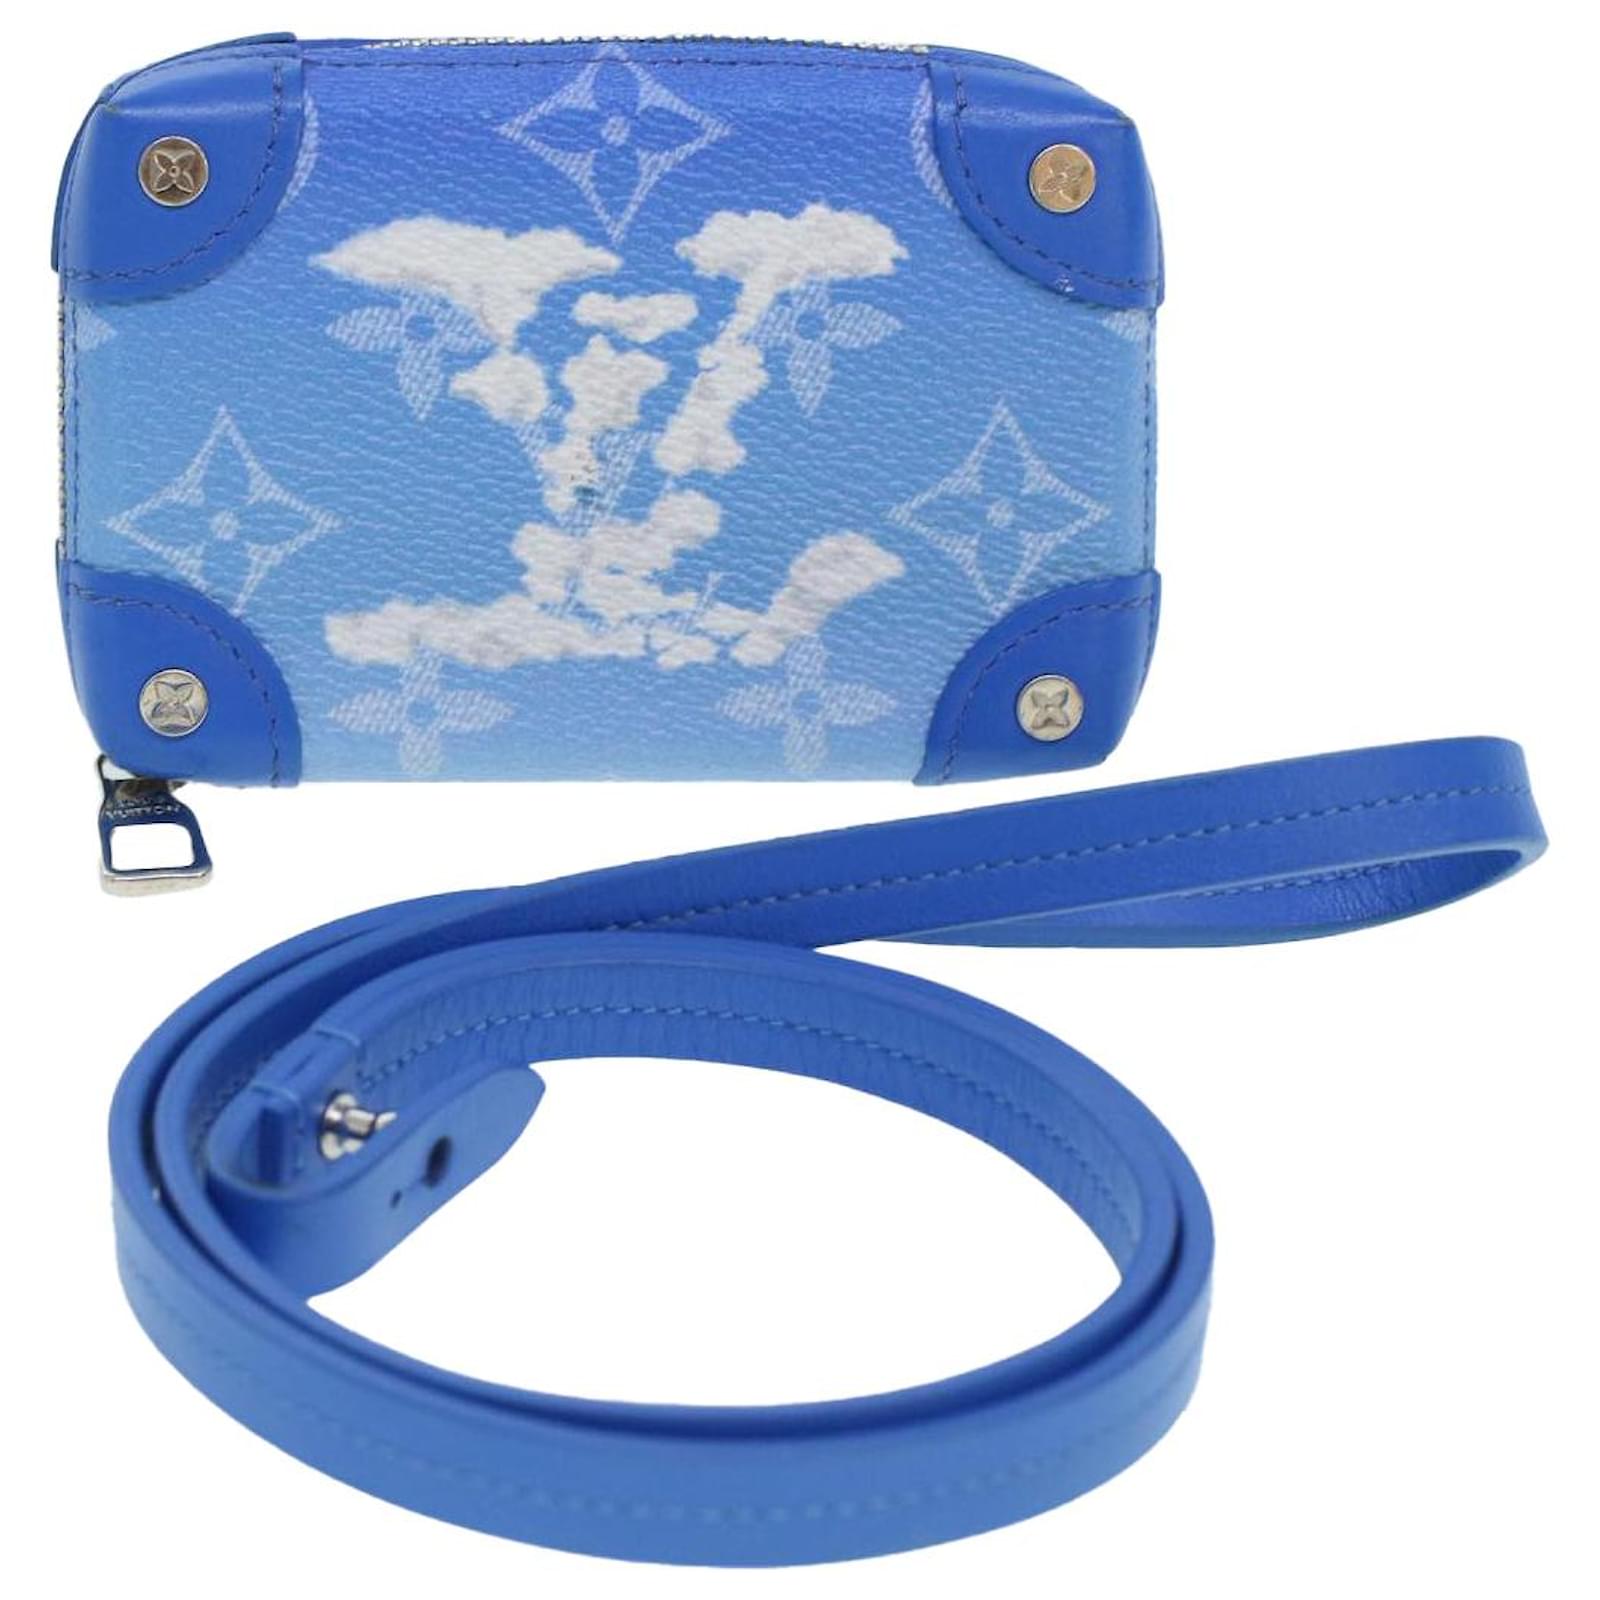 Clutch Bags Louis Vuitton Louis Vuitton Monogram Clouds Soft Trunk Necklace Pouch Blue M45440 Auth 42825a